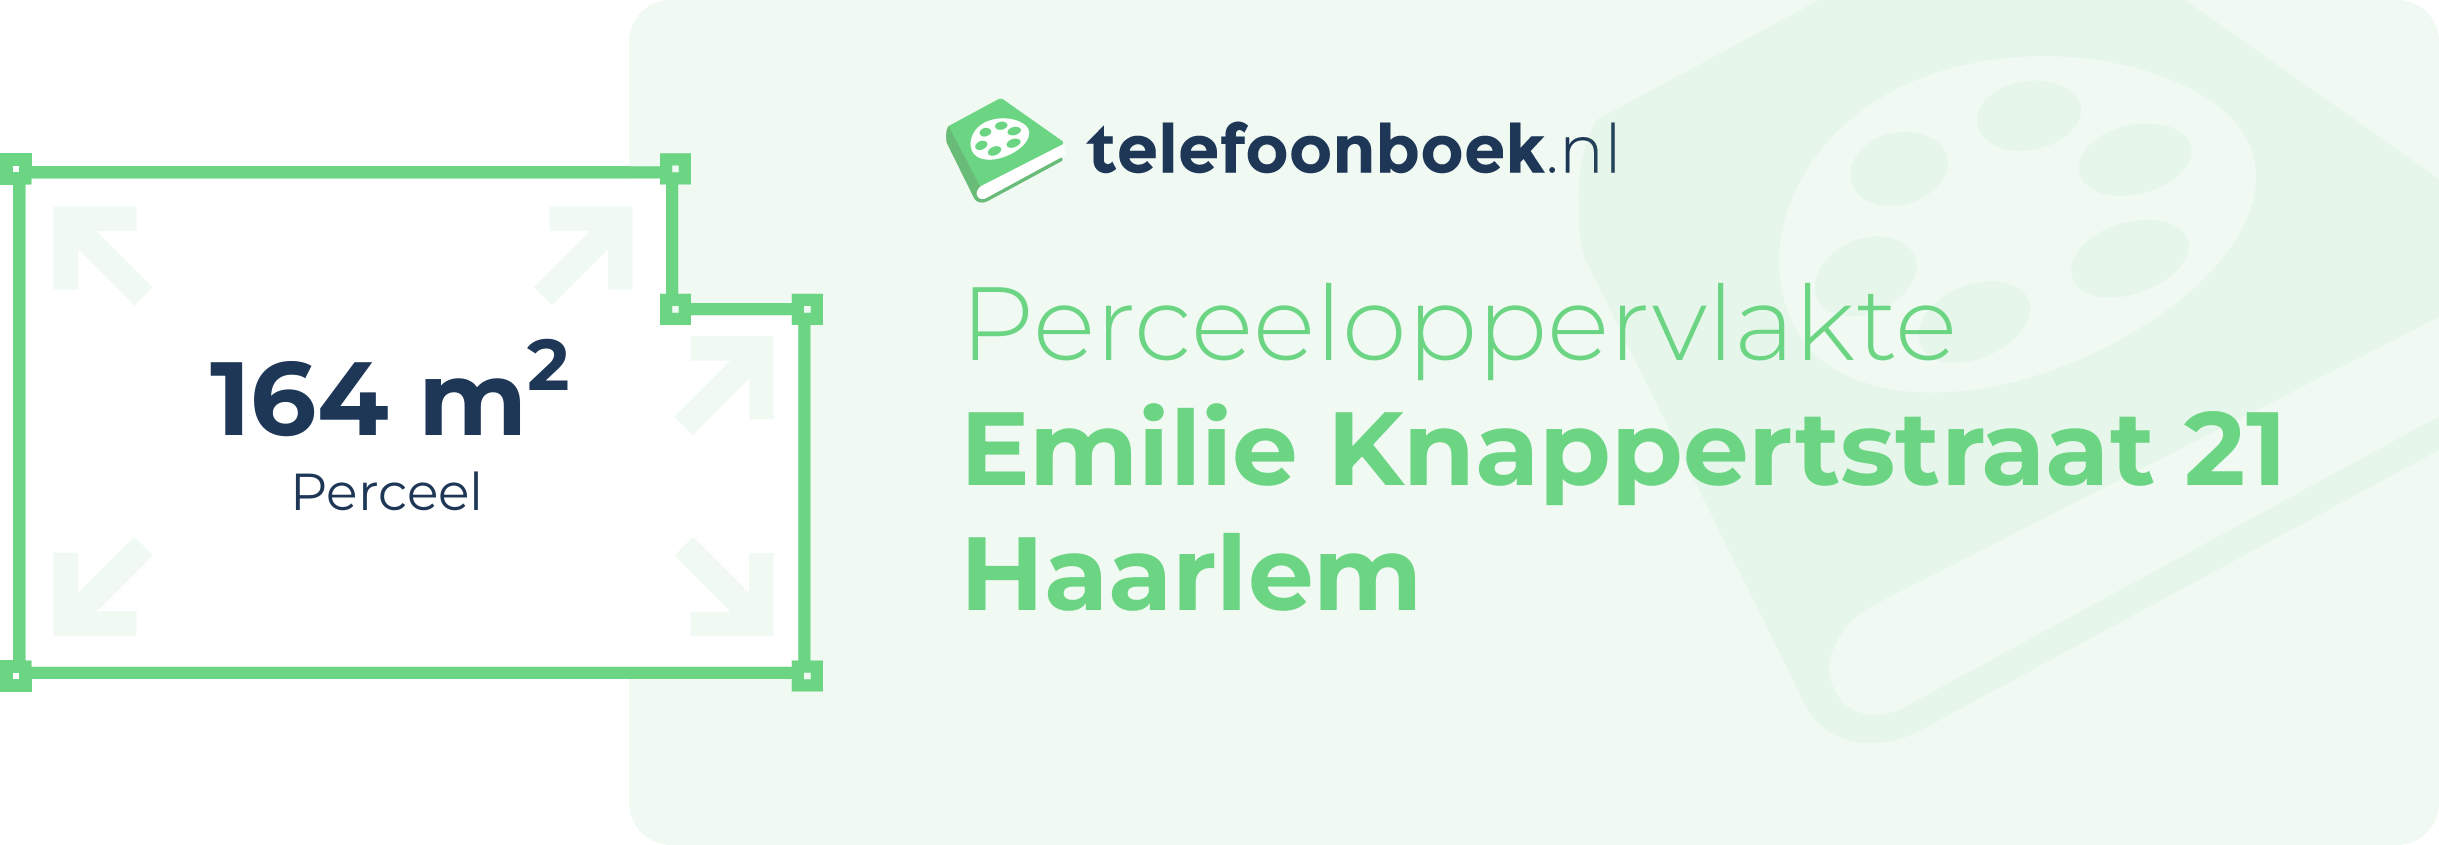 Perceeloppervlakte Emilie Knappertstraat 21 Haarlem